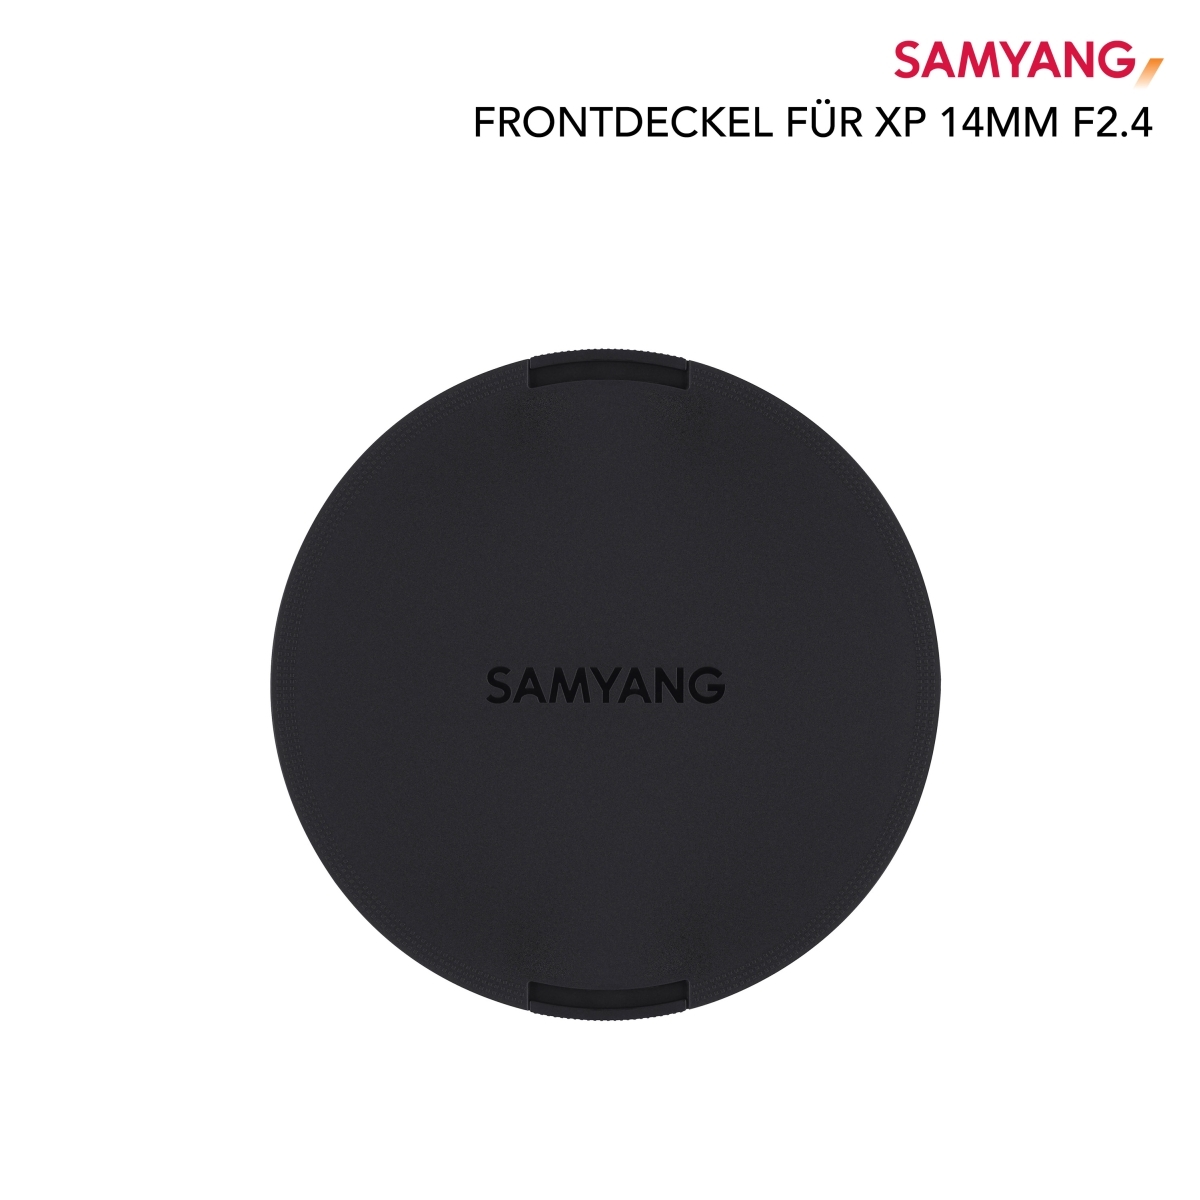 Couvercle avant Samyang pour XP 14mm F2,4